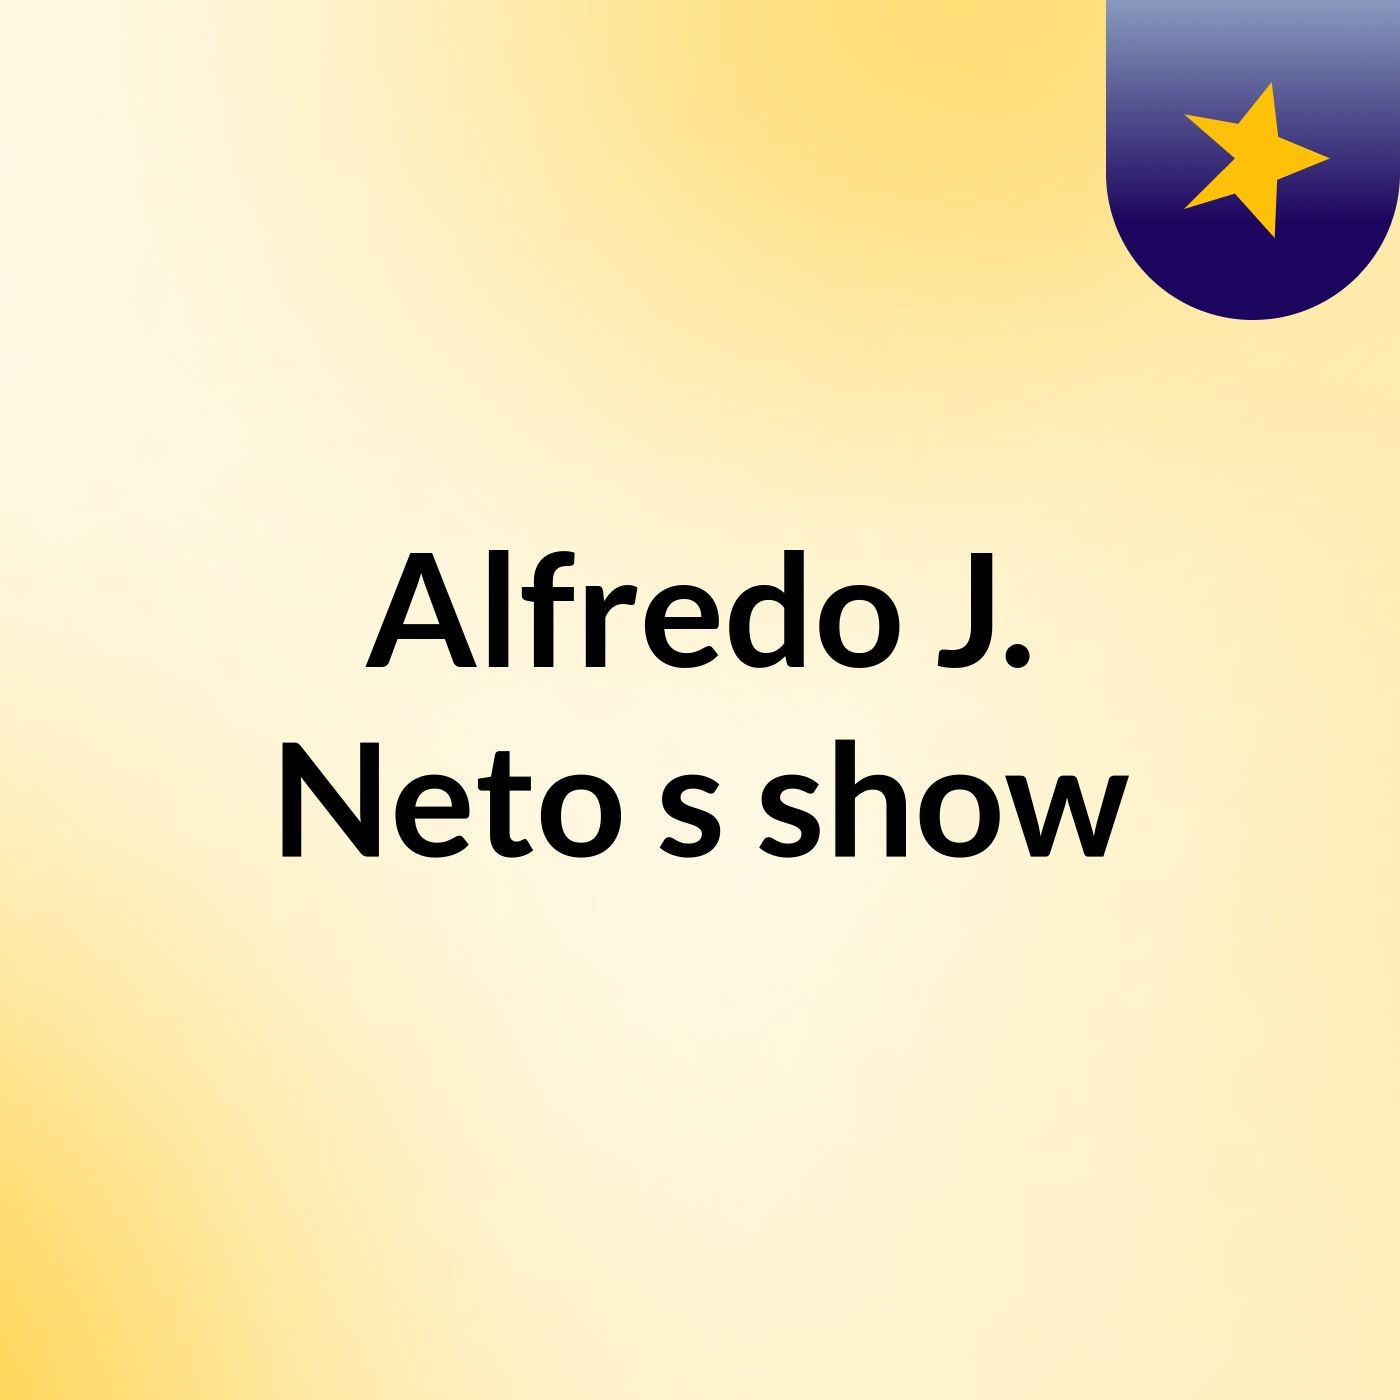 Alfredo J. Neto's show